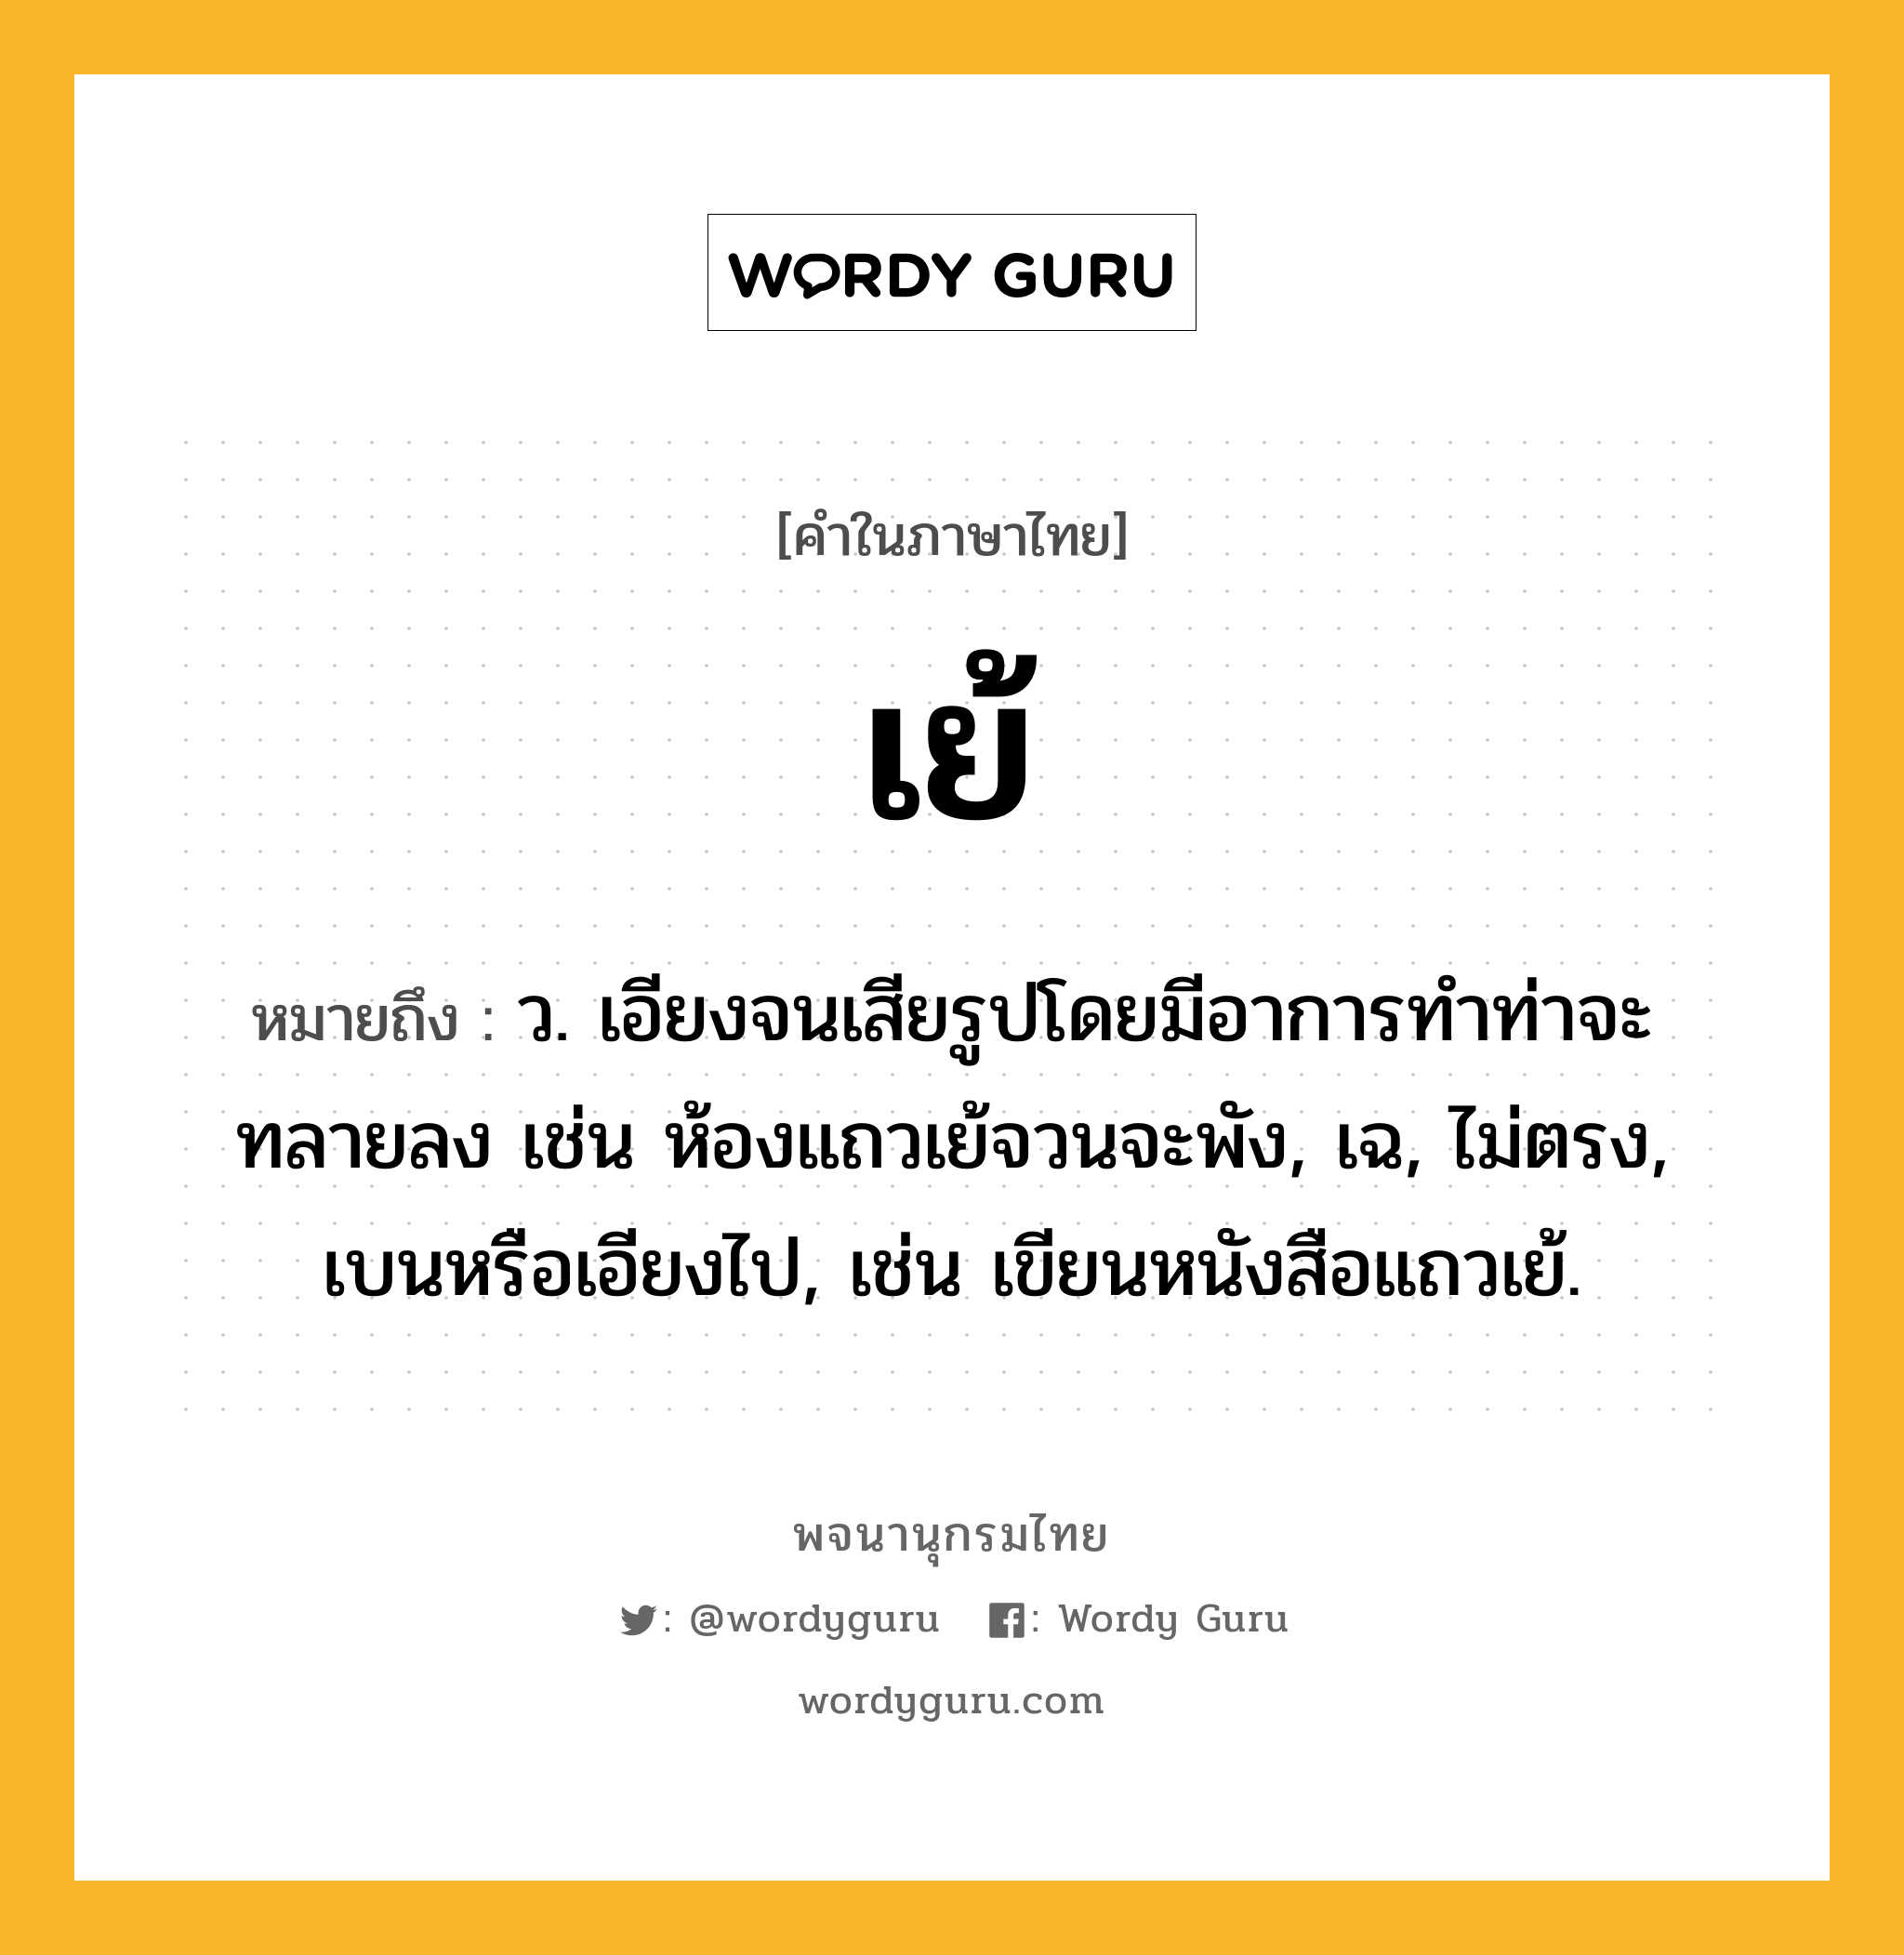 เย้ หมายถึงอะไร?, คำในภาษาไทย เย้ หมายถึง ว. เอียงจนเสียรูปโดยมีอาการทําท่าจะทลายลง เช่น ห้องแถวเย้จวนจะพัง, เฉ, ไม่ตรง, เบนหรือเอียงไป, เช่น เขียนหนังสือแถวเย้.